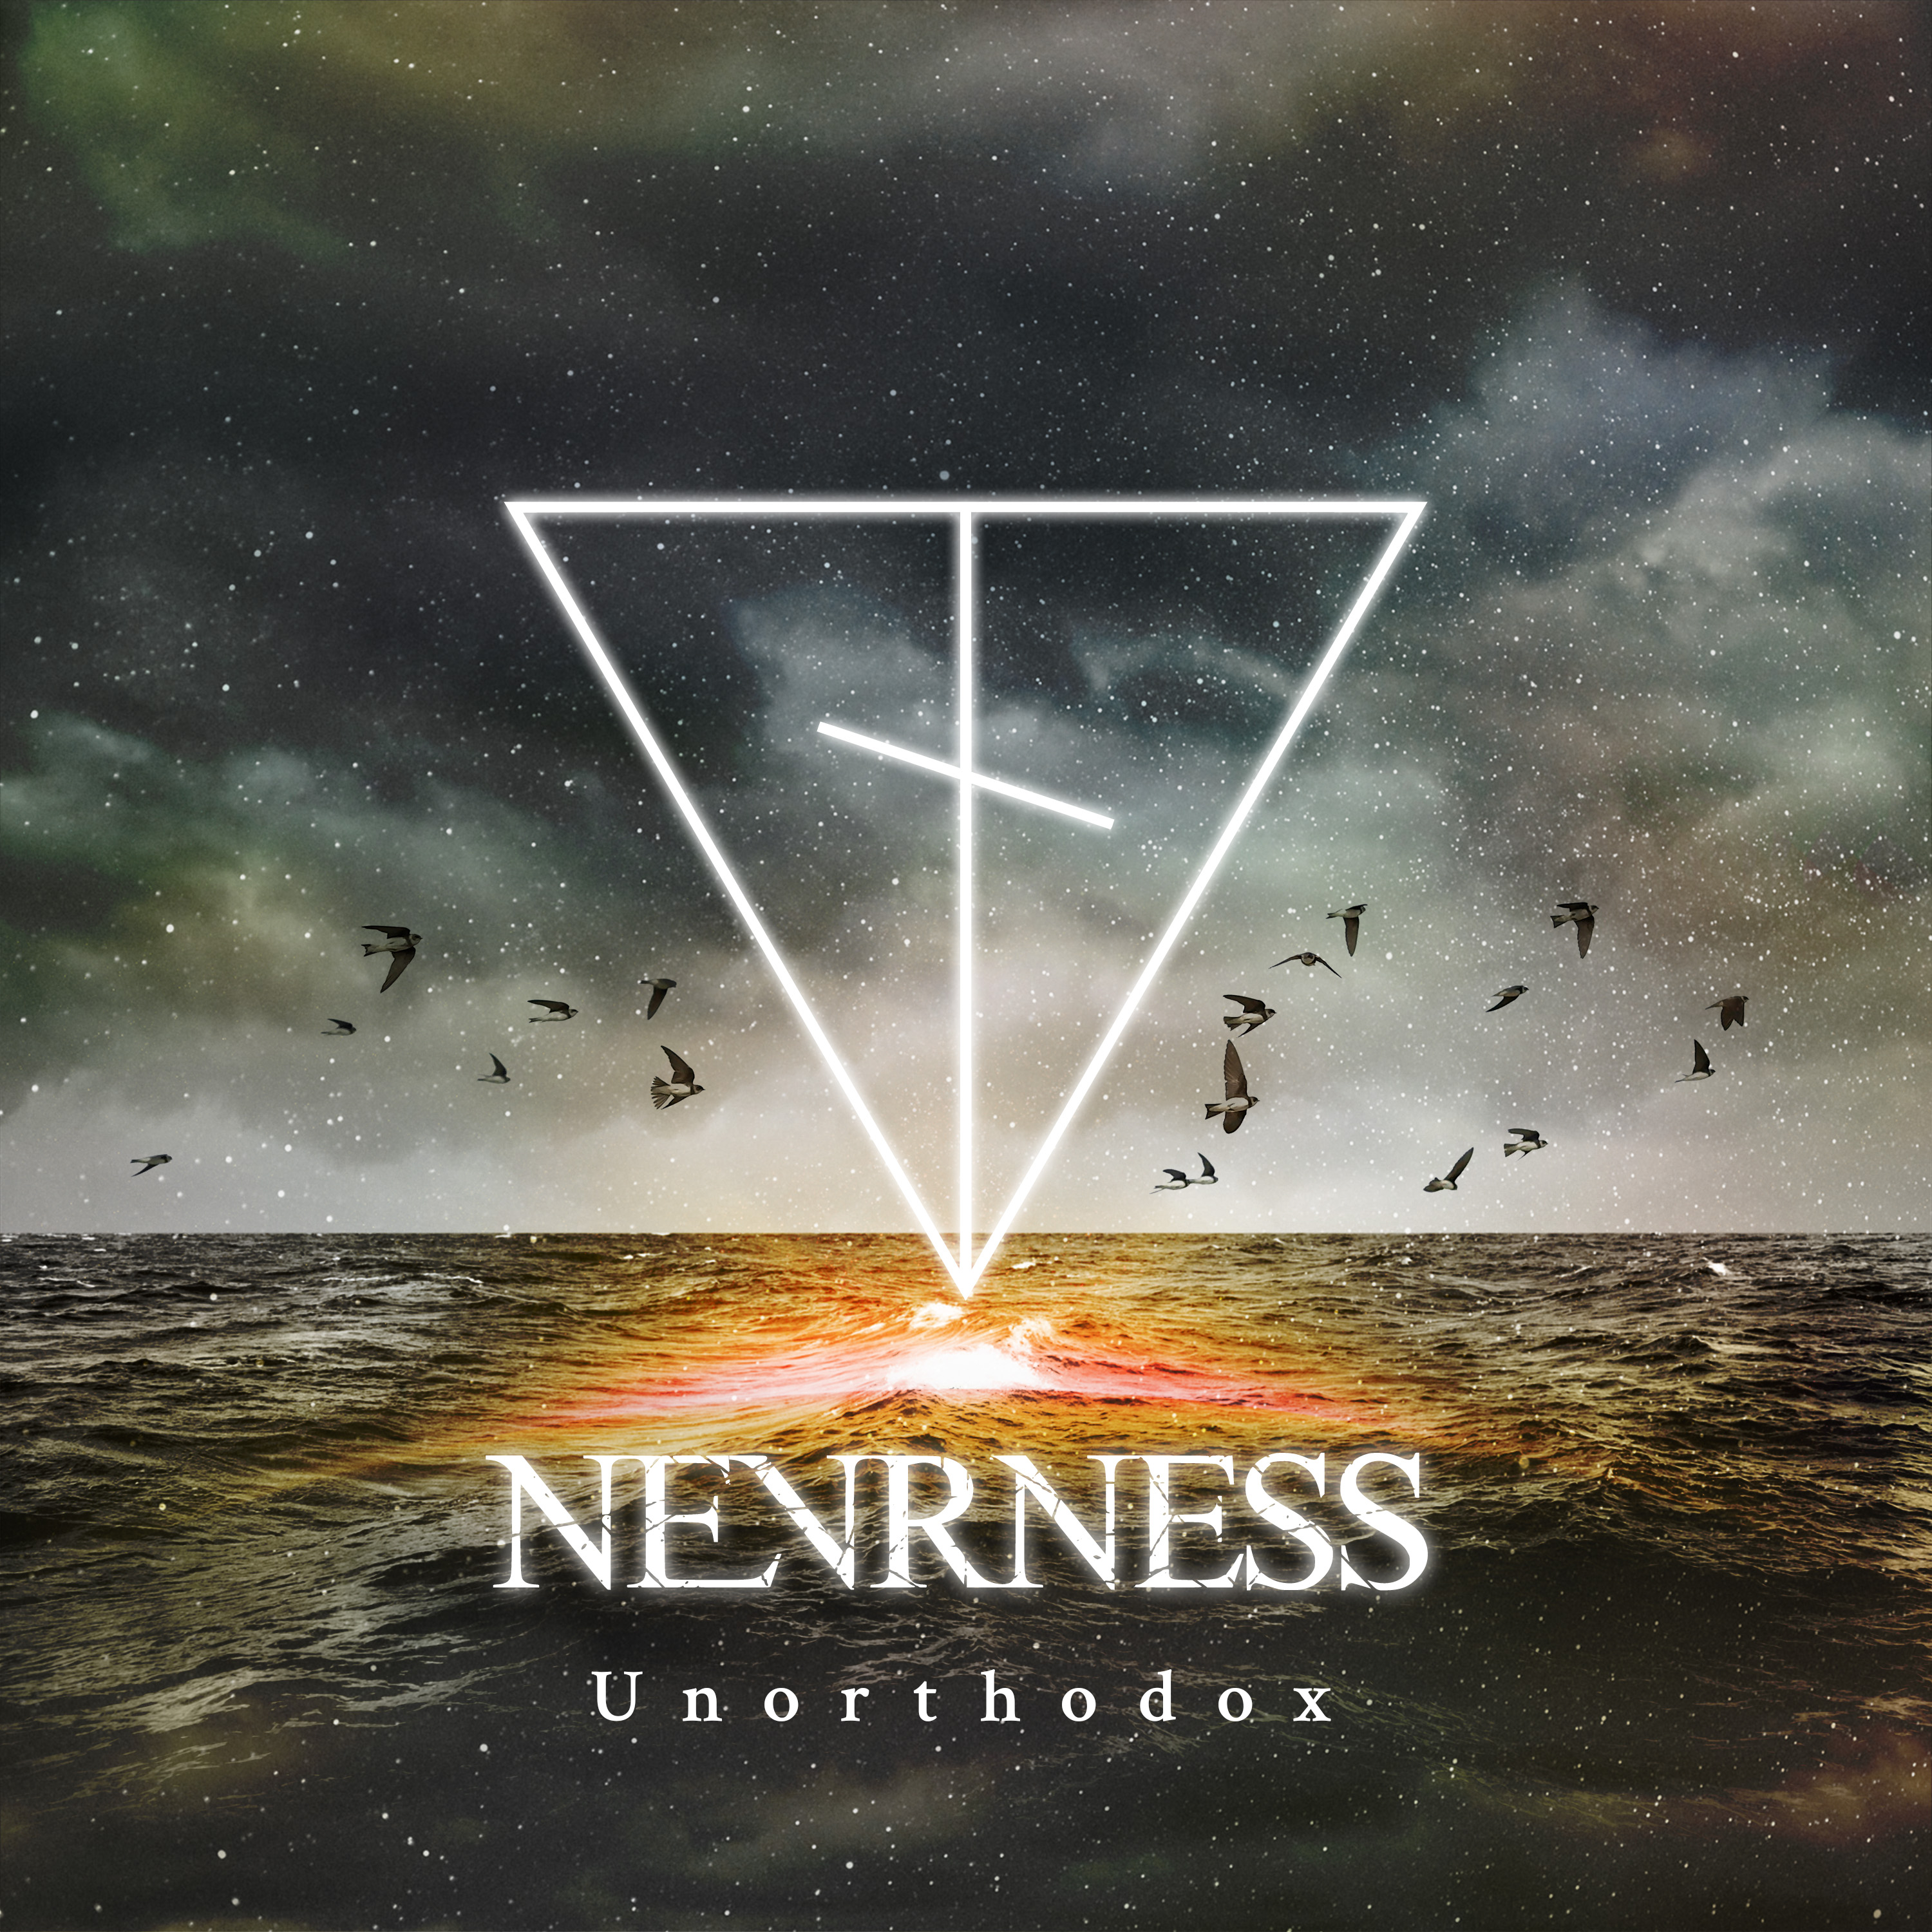 Nevrness - Unorthodox